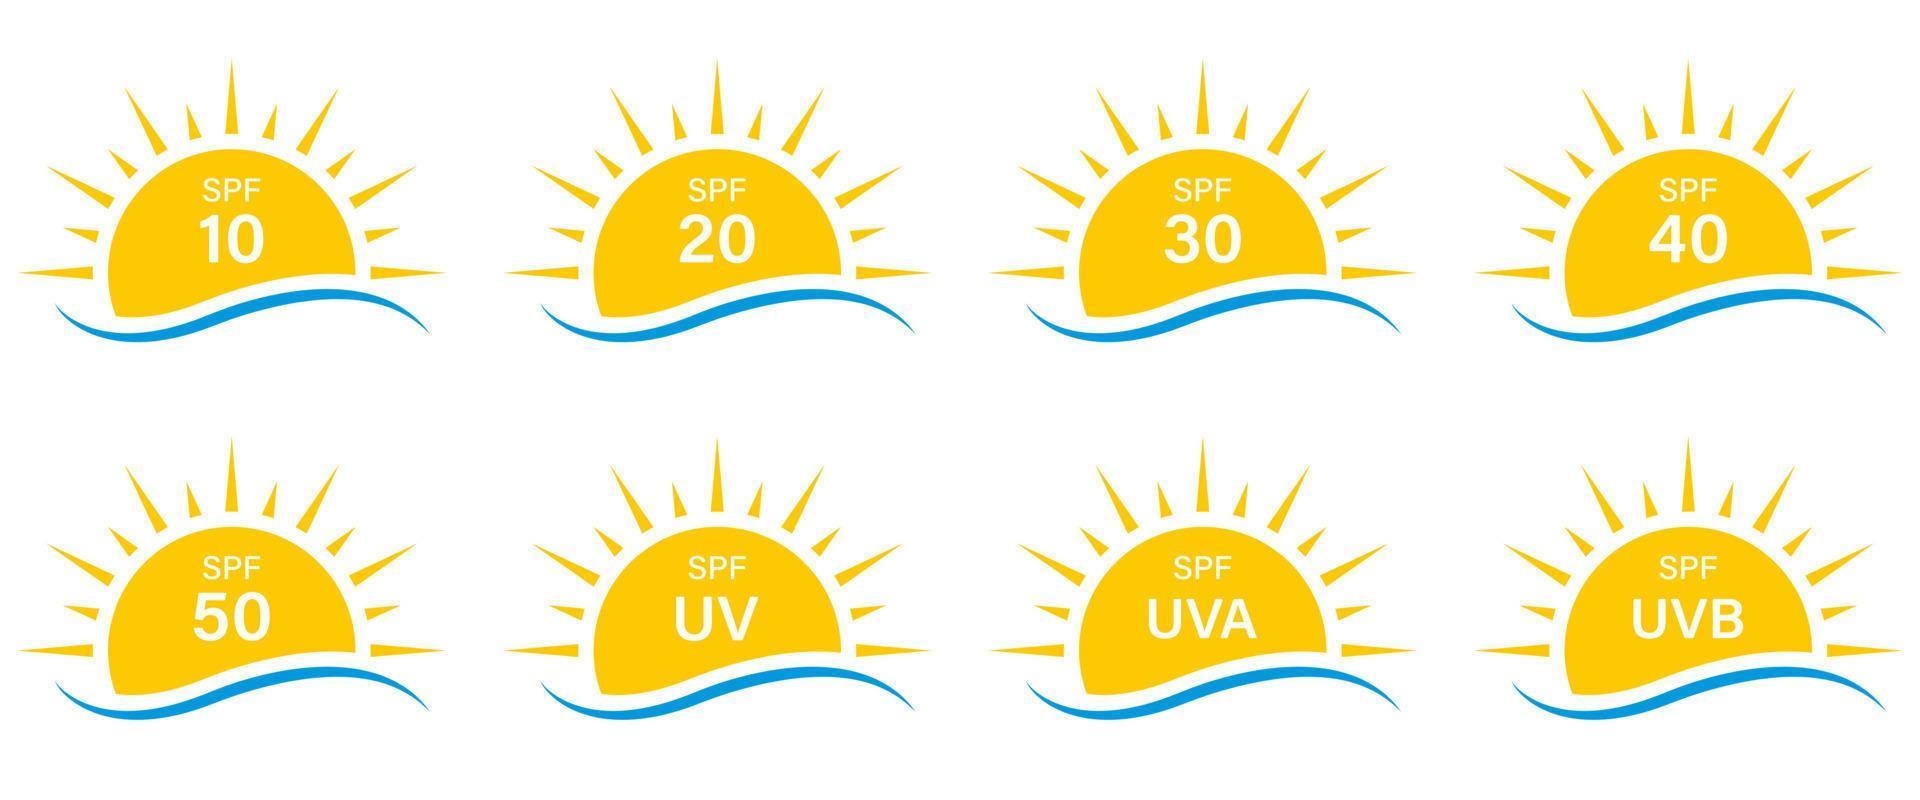 sol rayos uv spf 50 40 30 20 10 proteger conjunto de iconos de silueta de radiación. protección solar de verano rayos ultravioleta uva uvb pictograma de glifo de piel de defensa. icono. ilustración vectorial aislada vector